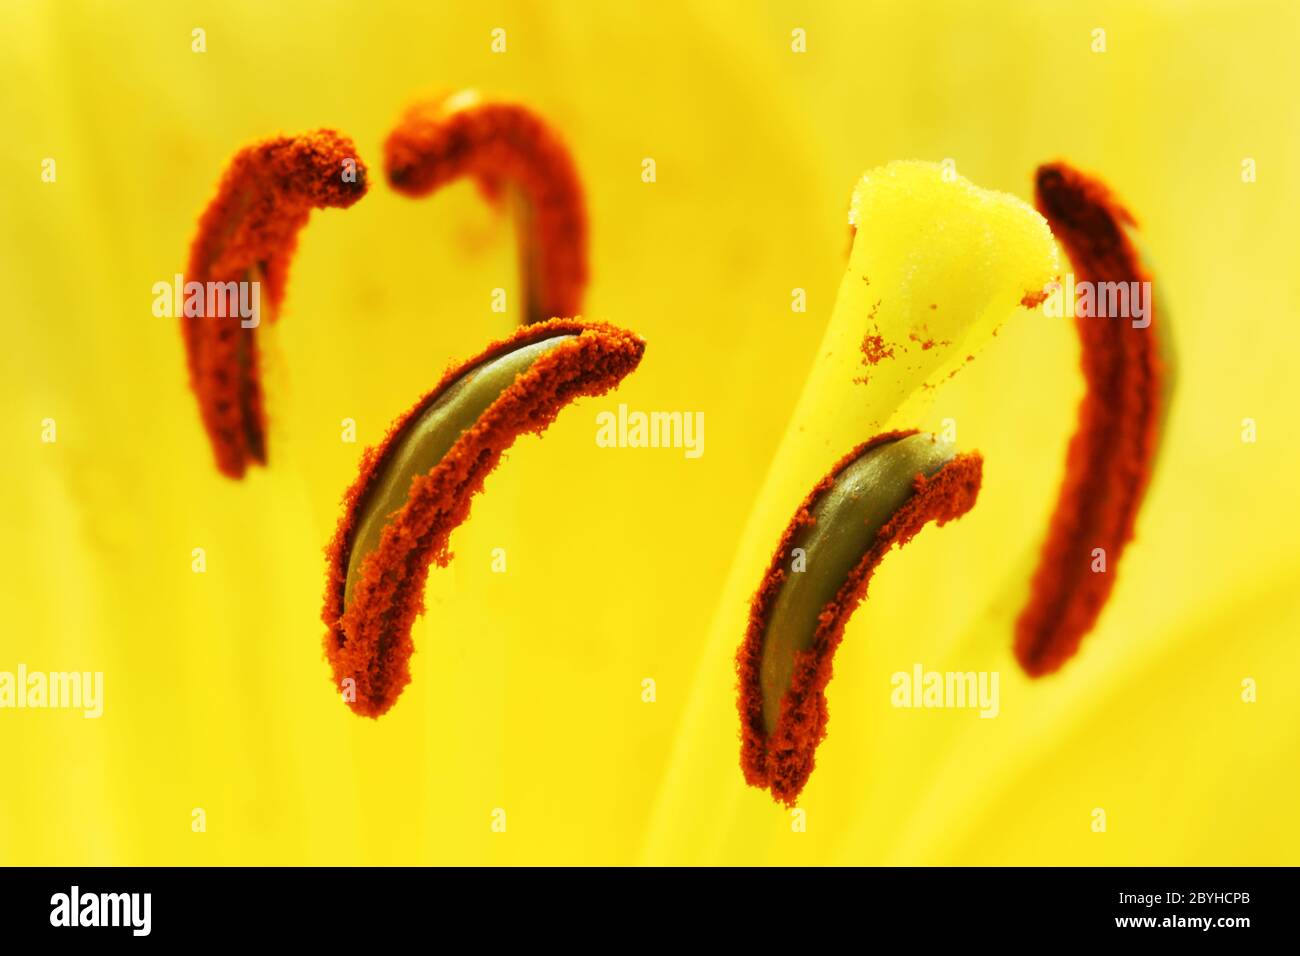 Flower pistils Stock Photo